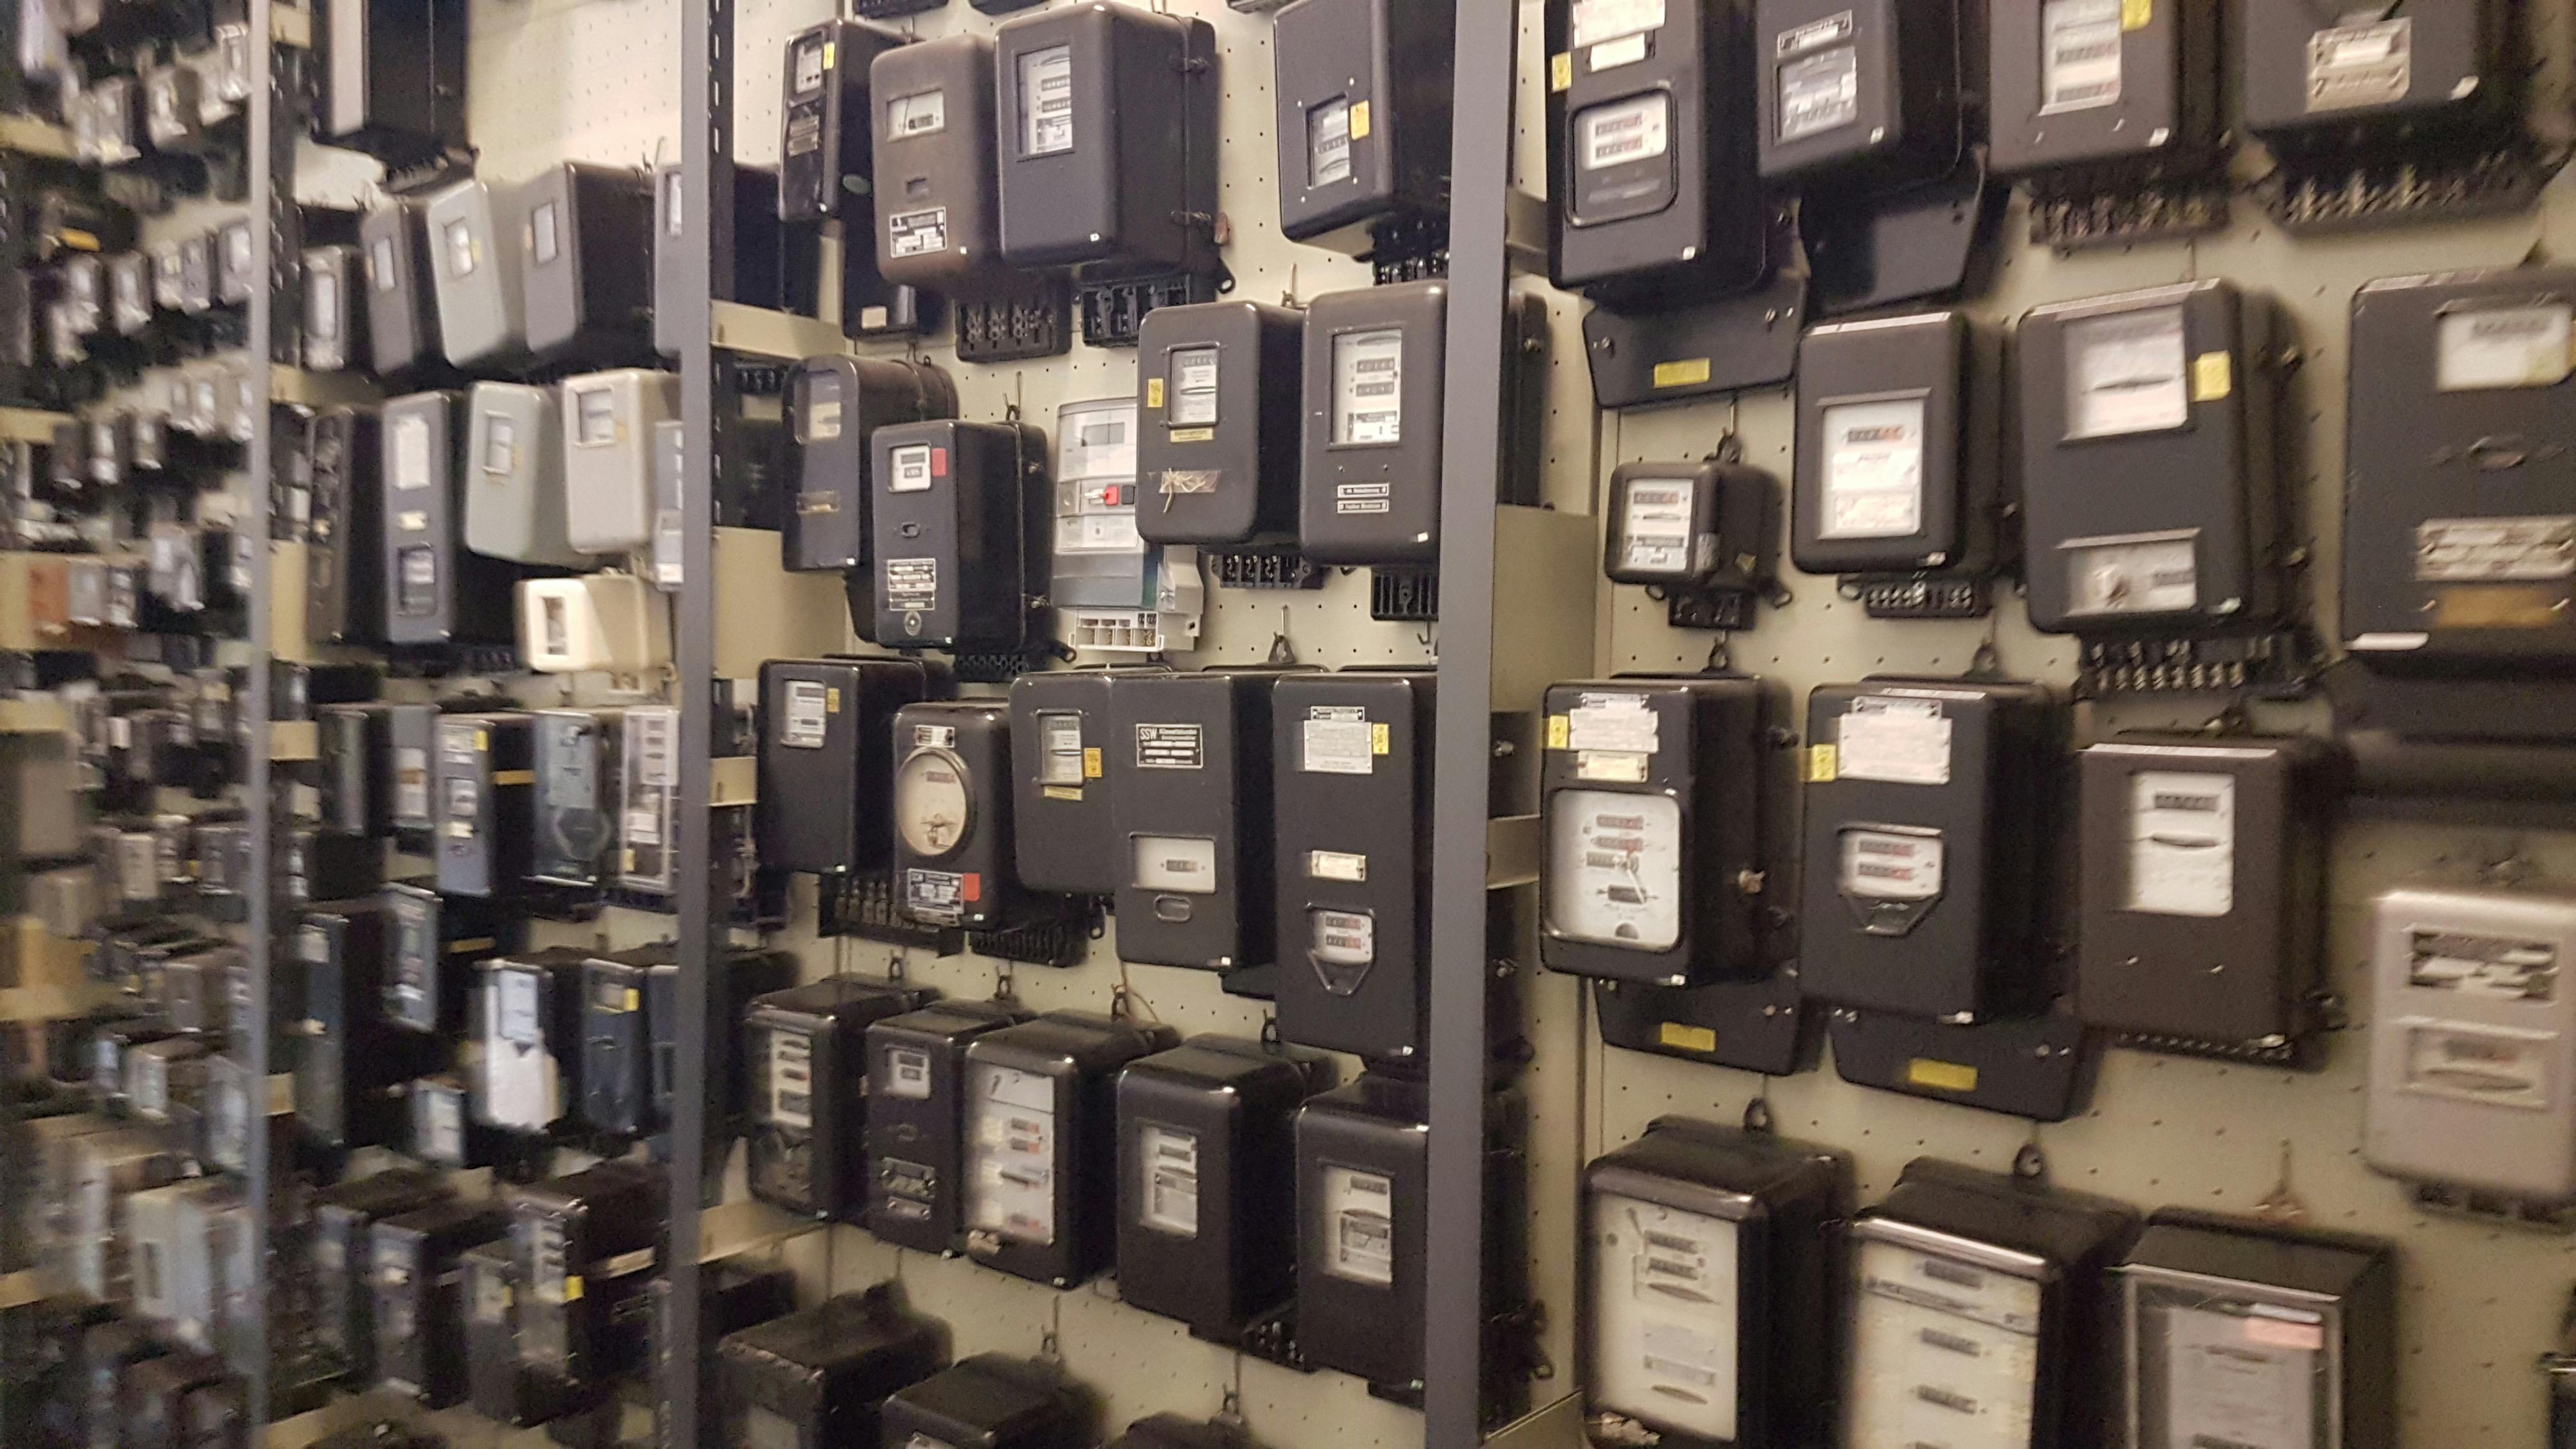 Free stock photo of Electricity meters, Energy meters, KwH meters